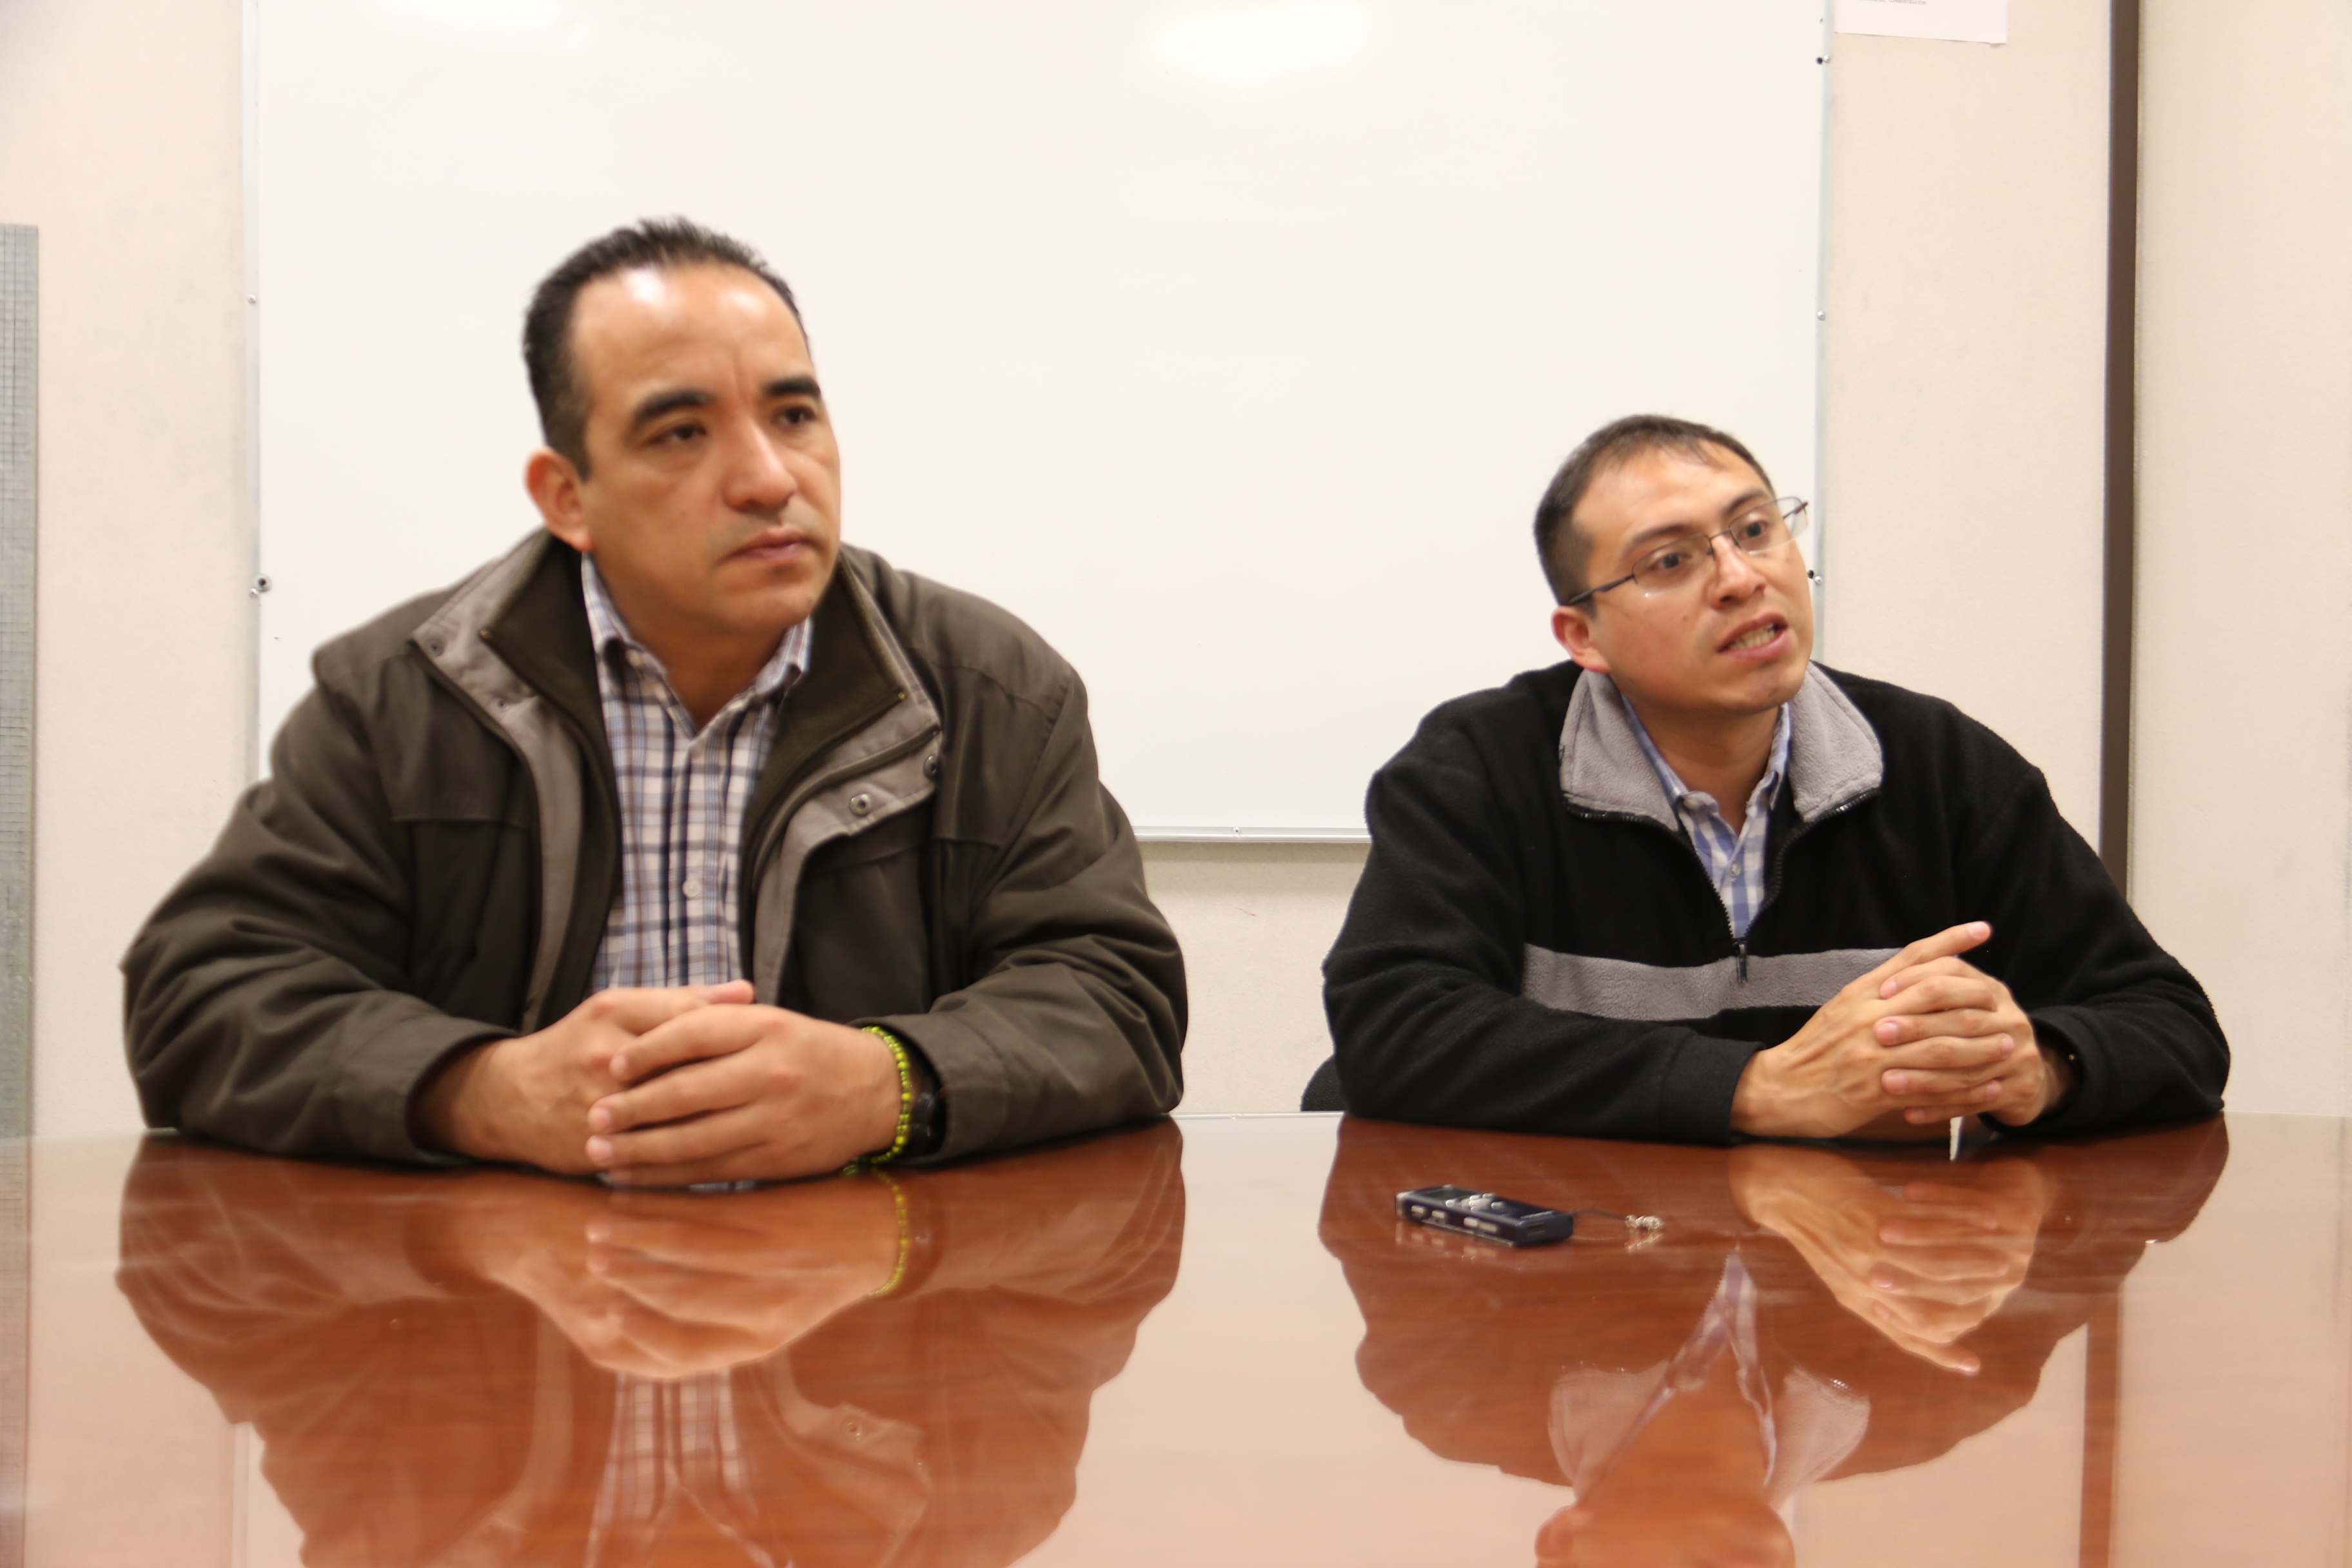 México requiere especialistas en ciencias geoespaciales para estudiar territorio nacional